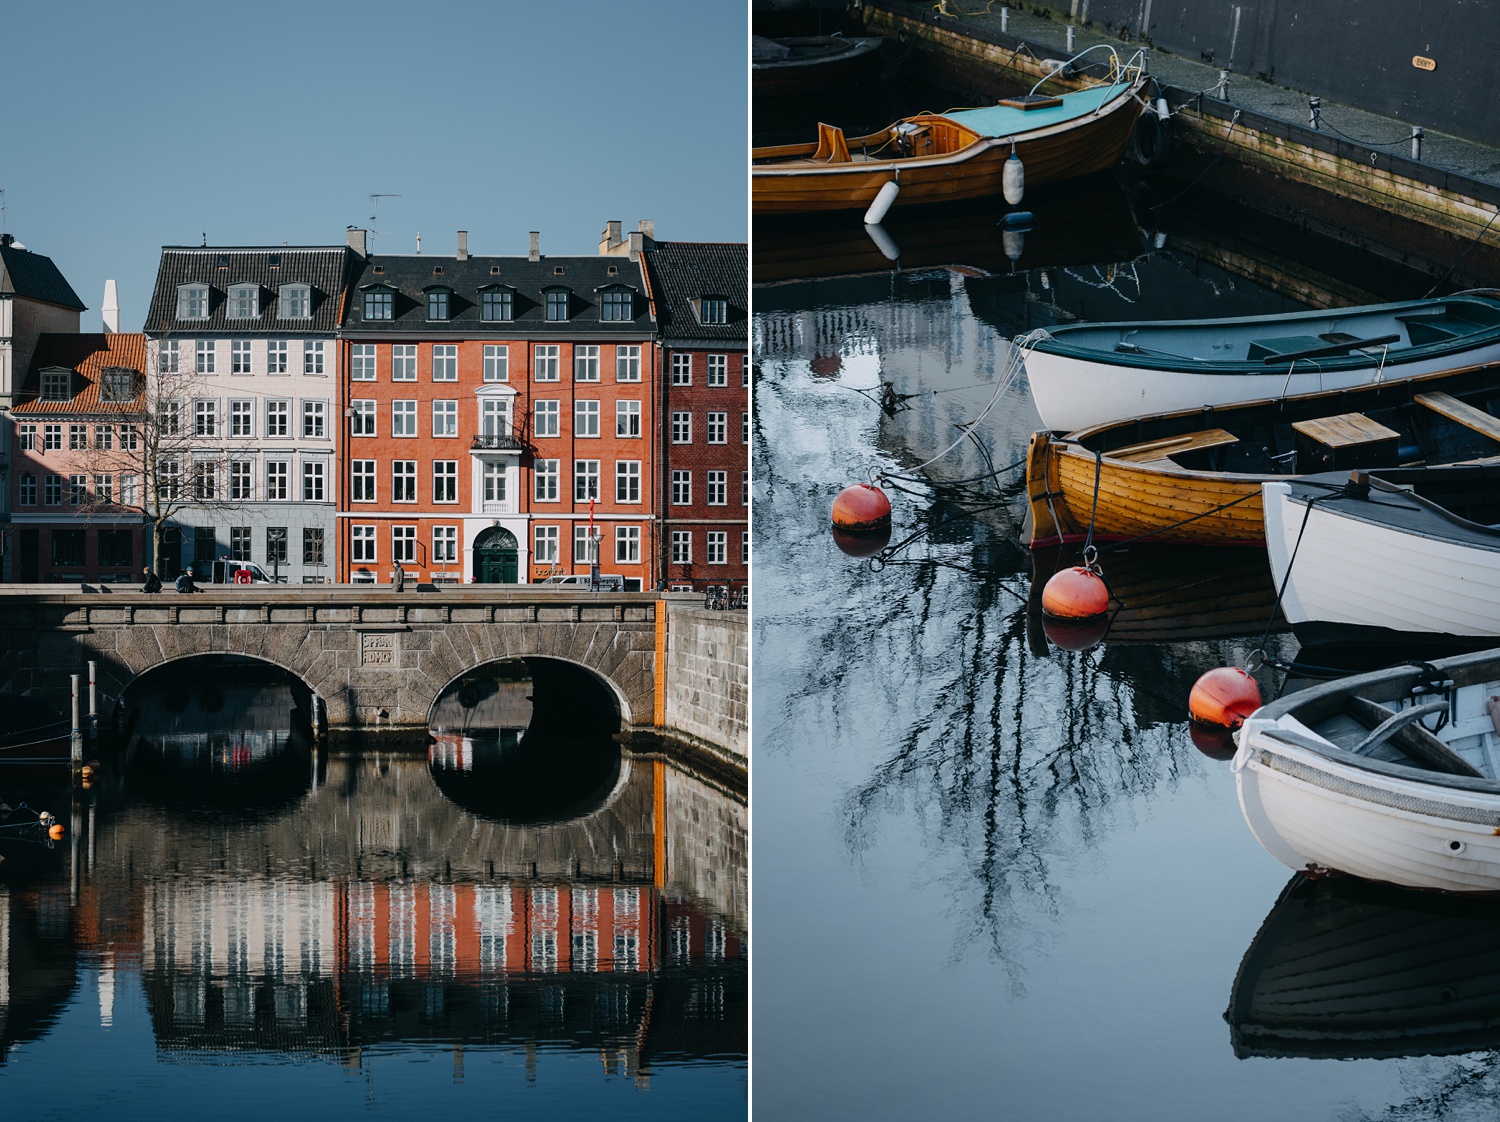 engagement portraits taken along Frederiksholms Kanal, Copenhagen